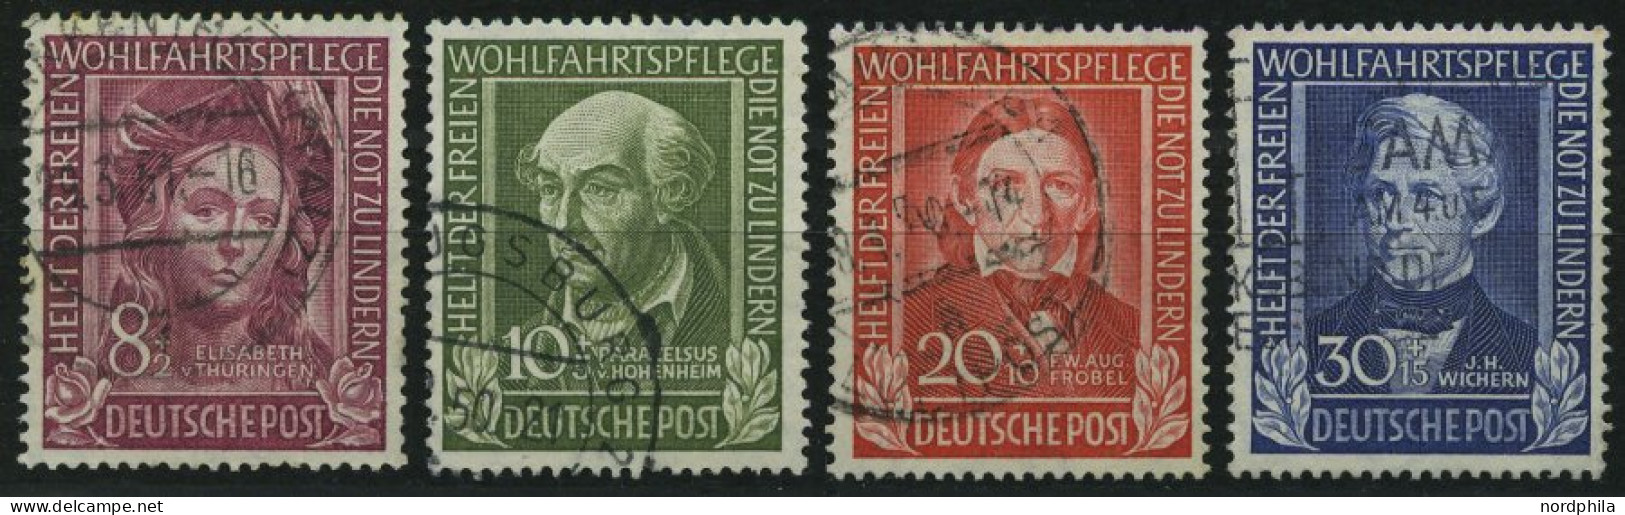 BUNDESREPUBLIK 117-20 O, 1949, Helfer Der Menschheit, Satz Feinst, Mi. 170.- - Used Stamps